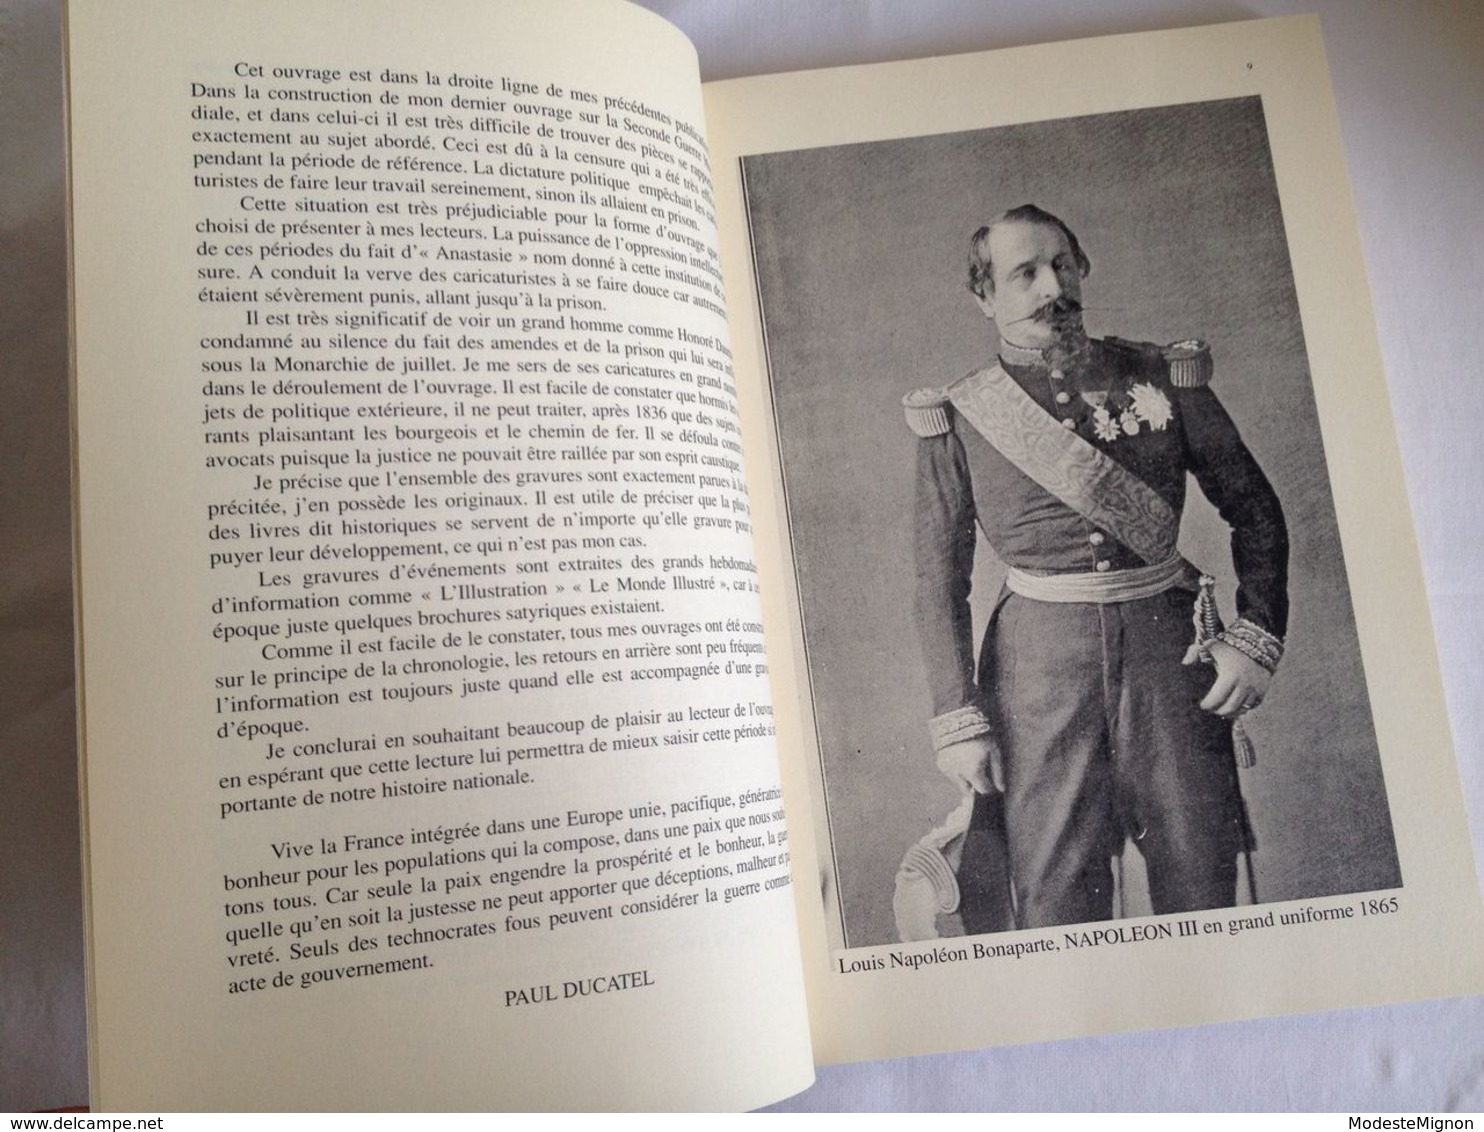 La vie tumultueuse et échevelée de Louis Napoléon Bonaparte par Paul Ducatel. Tome VII. Ed. Grassin